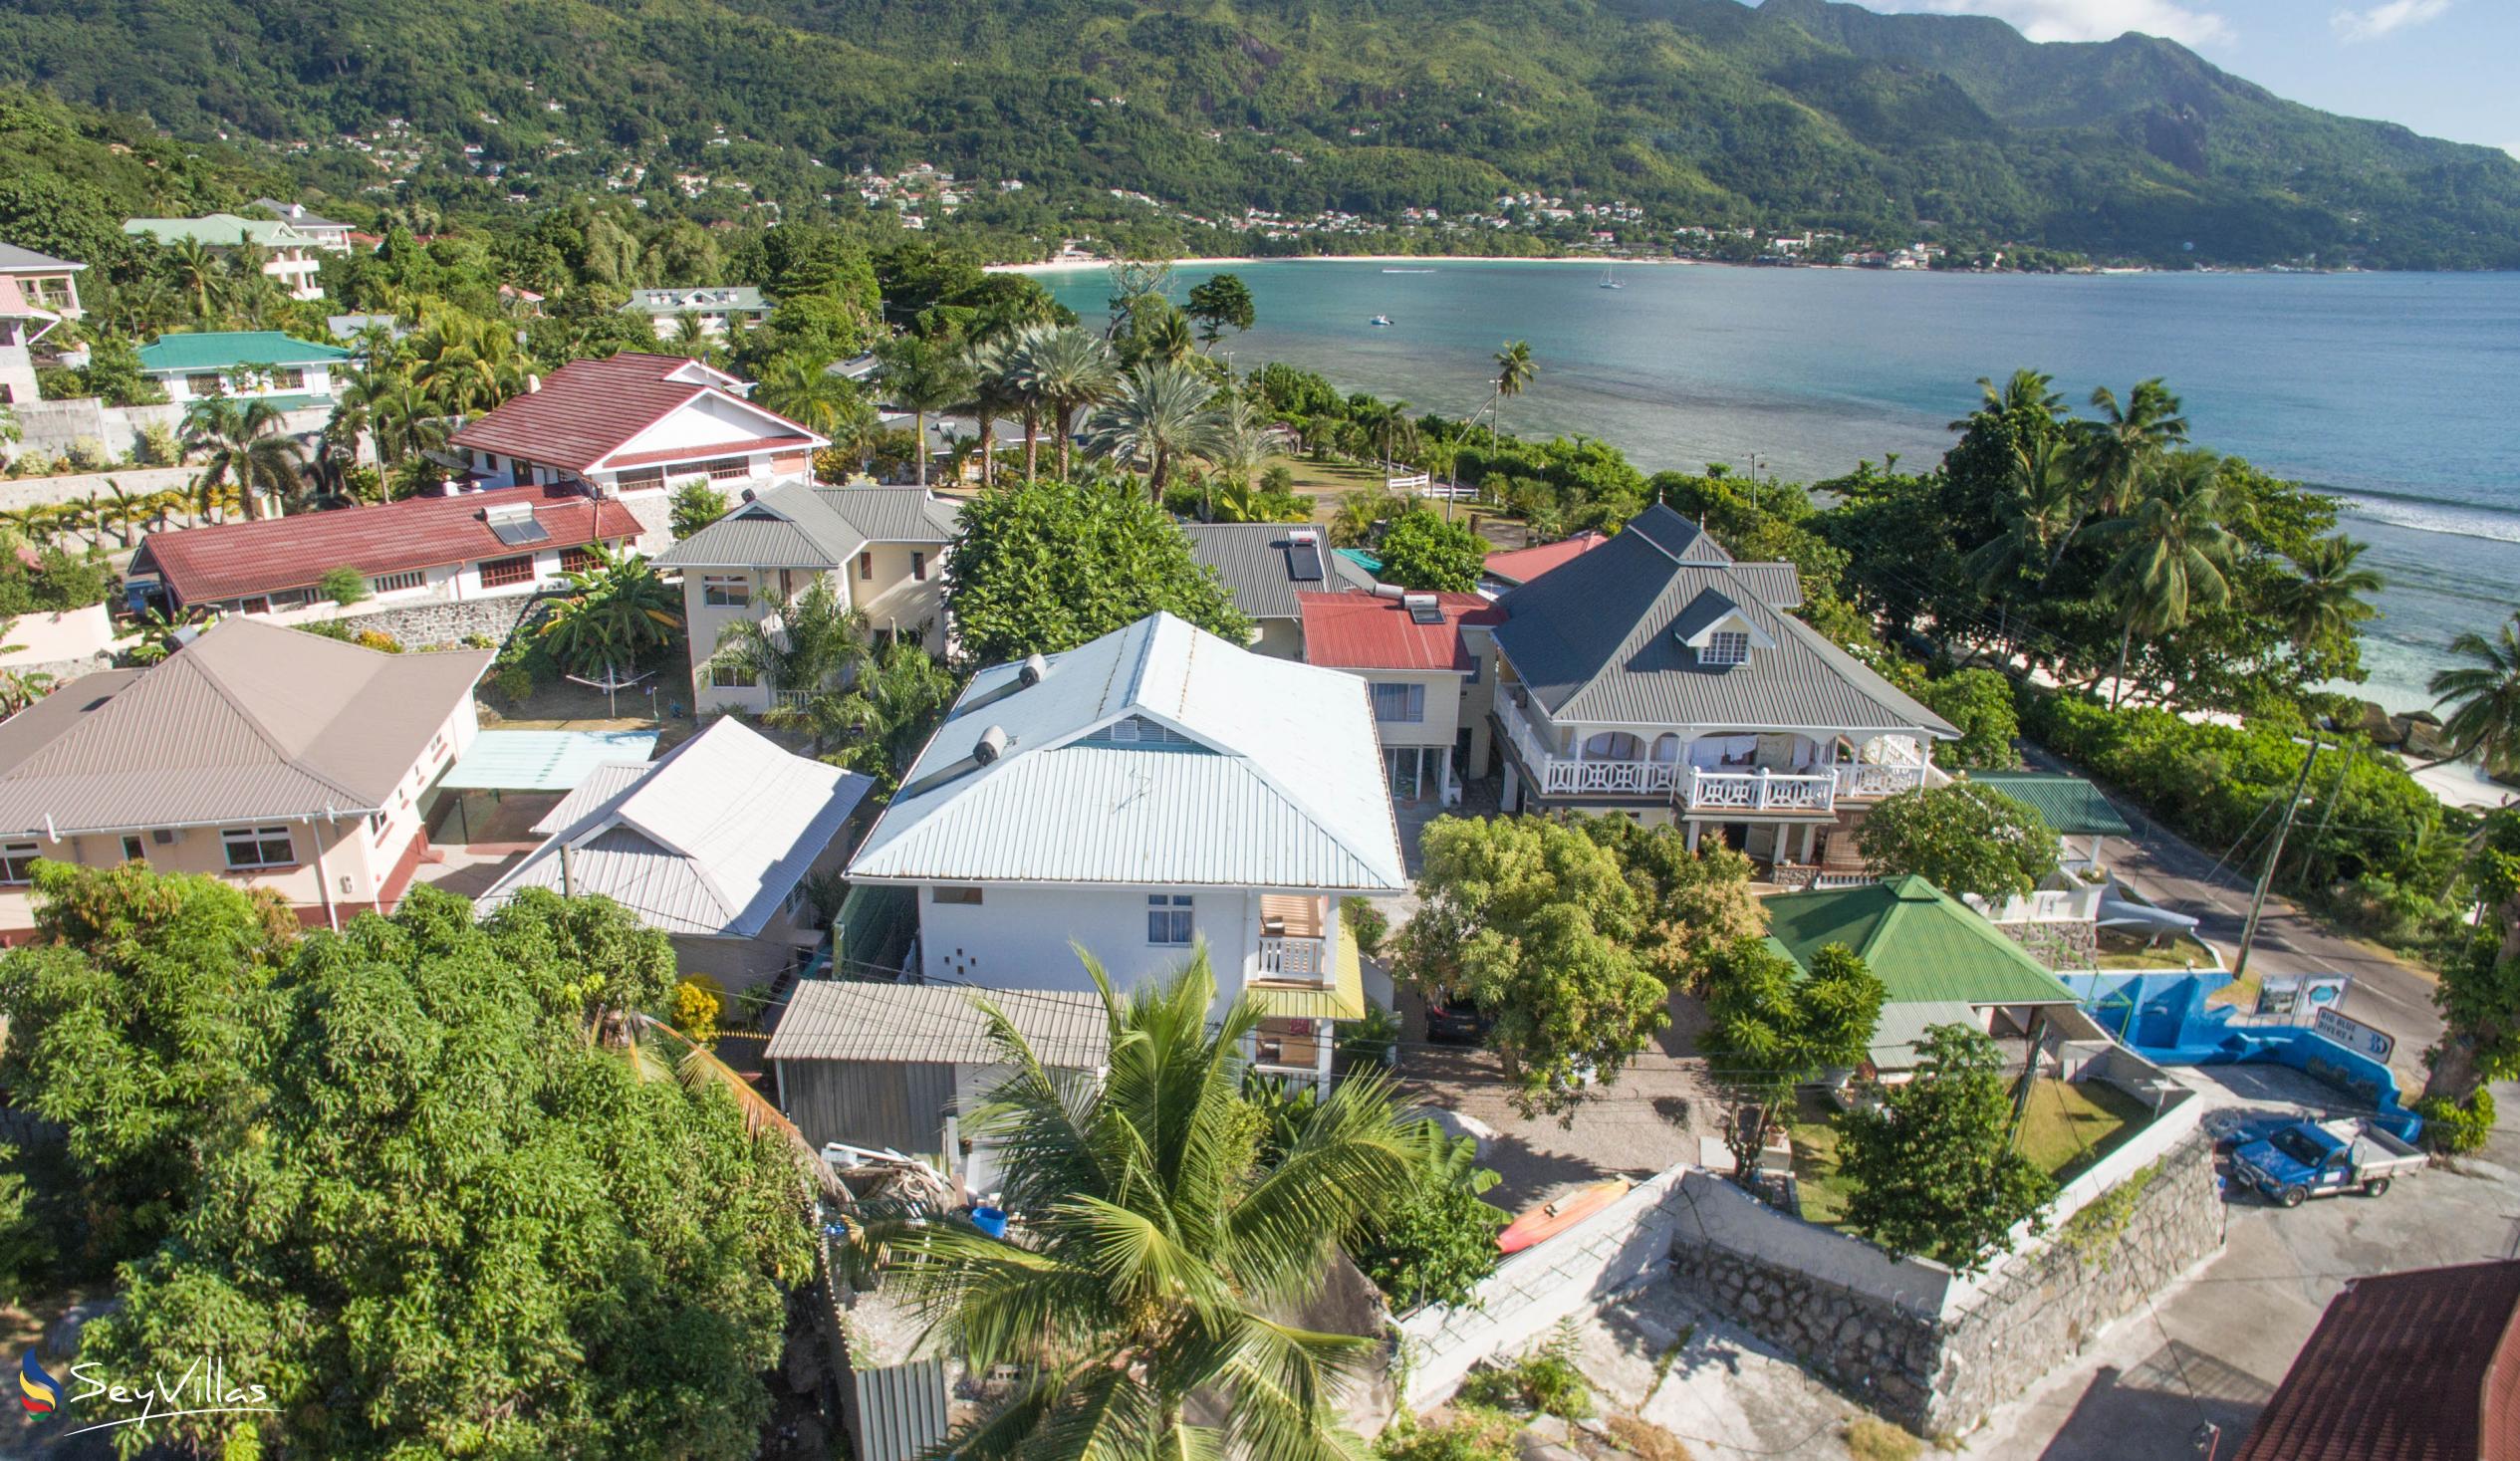 Foto 27: The Diver's Lodge - Location - Mahé (Seychelles)